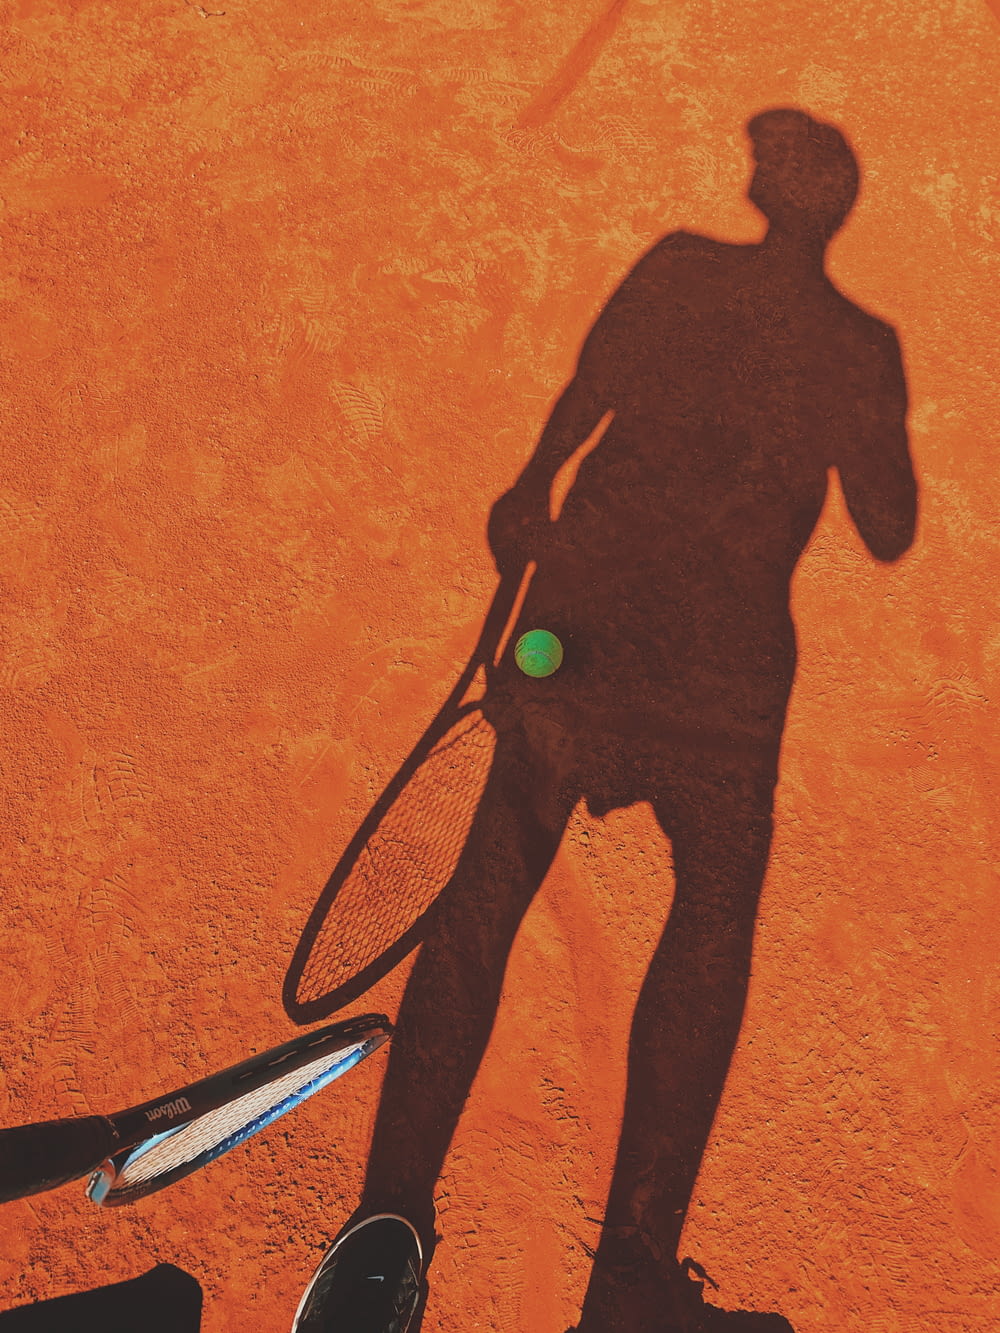 Ein Schatten eines Mannes, der einen Tennisschläger hält